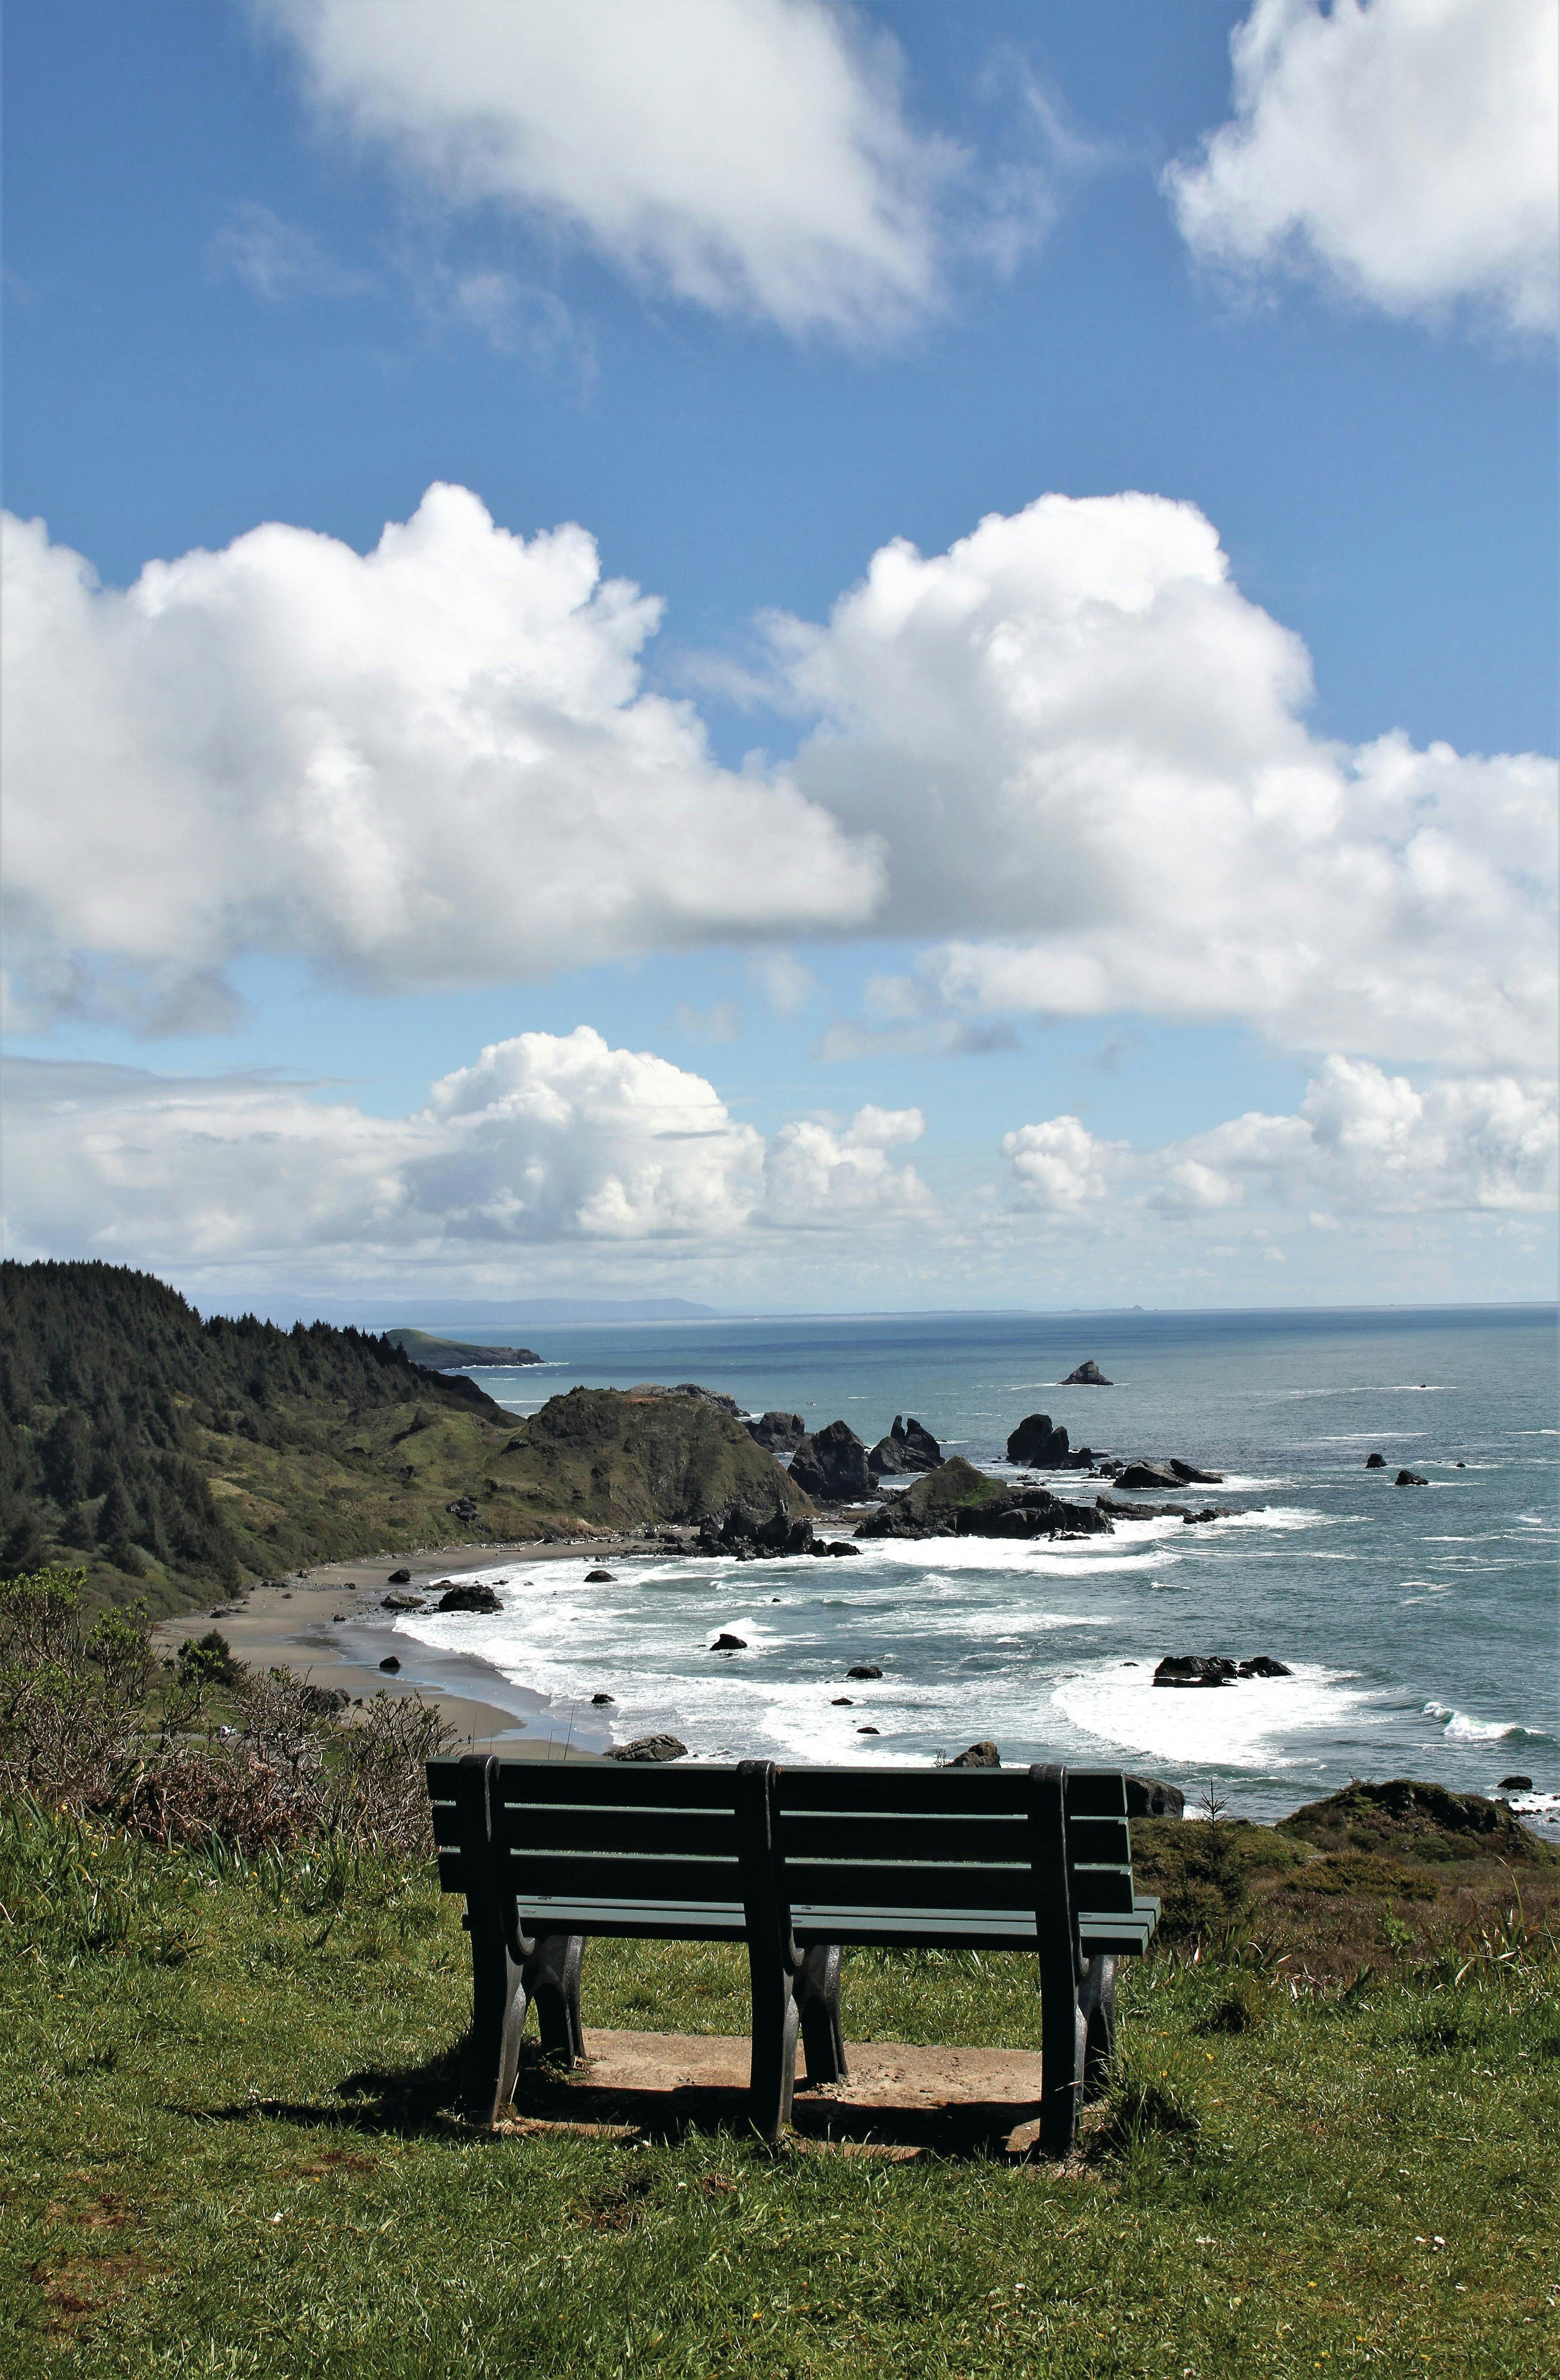 The Oregon Coast Trail